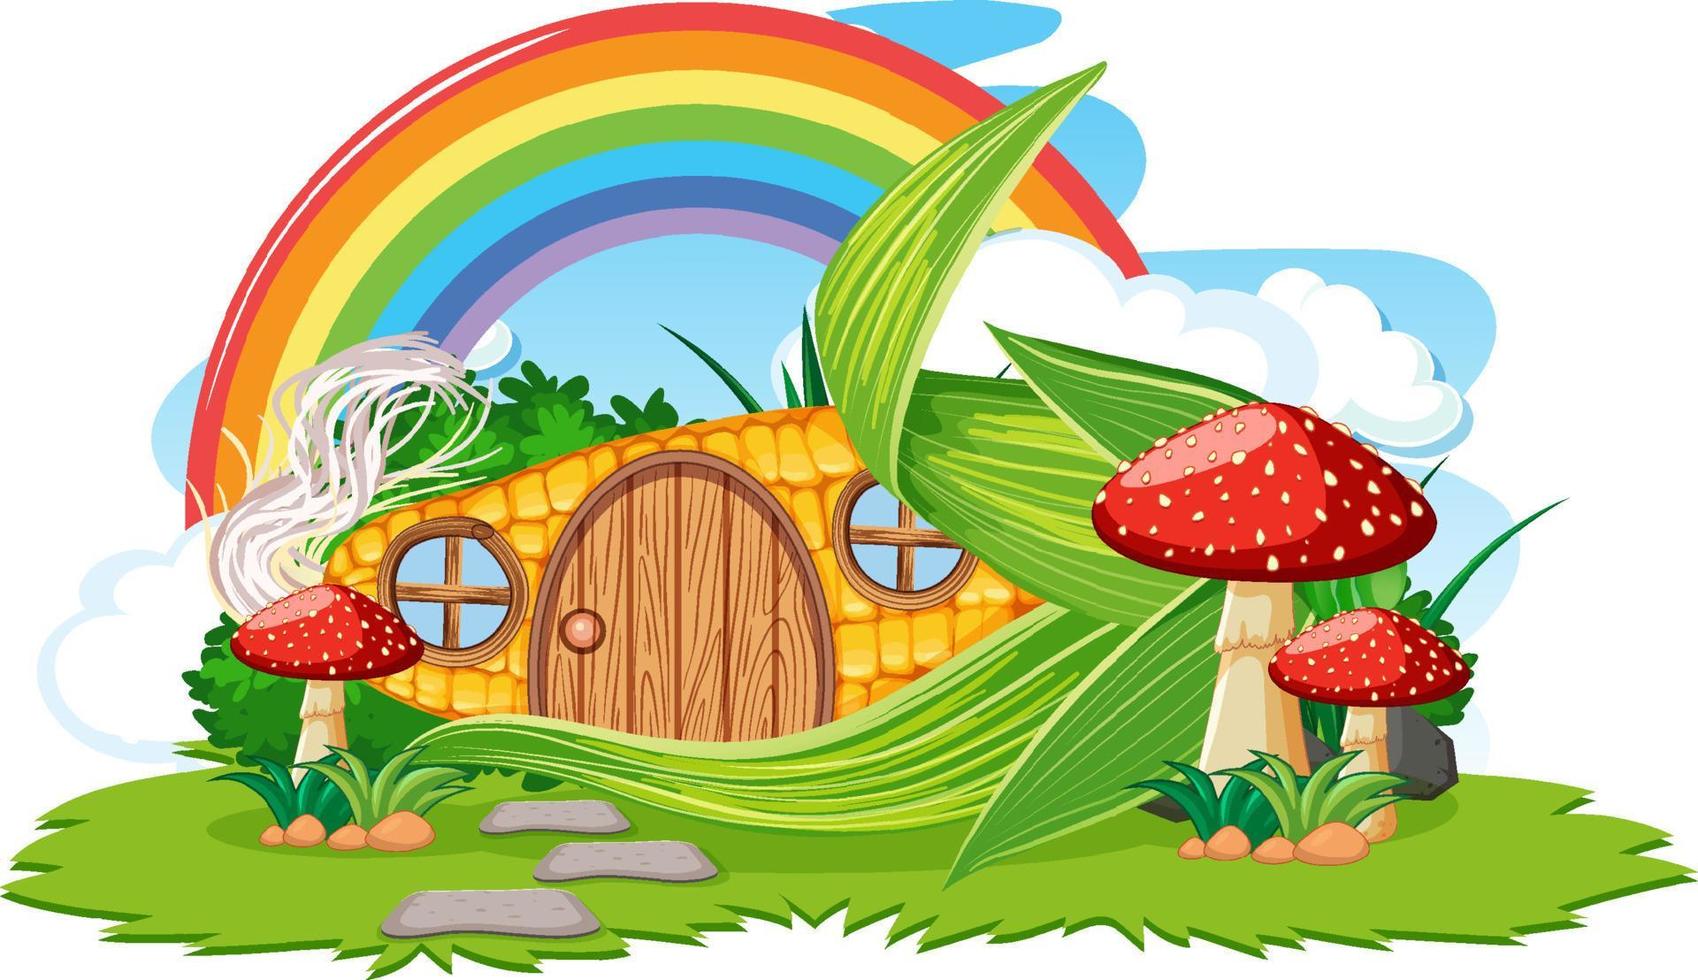 fantasie maïshuis met regenboog in de lucht vector